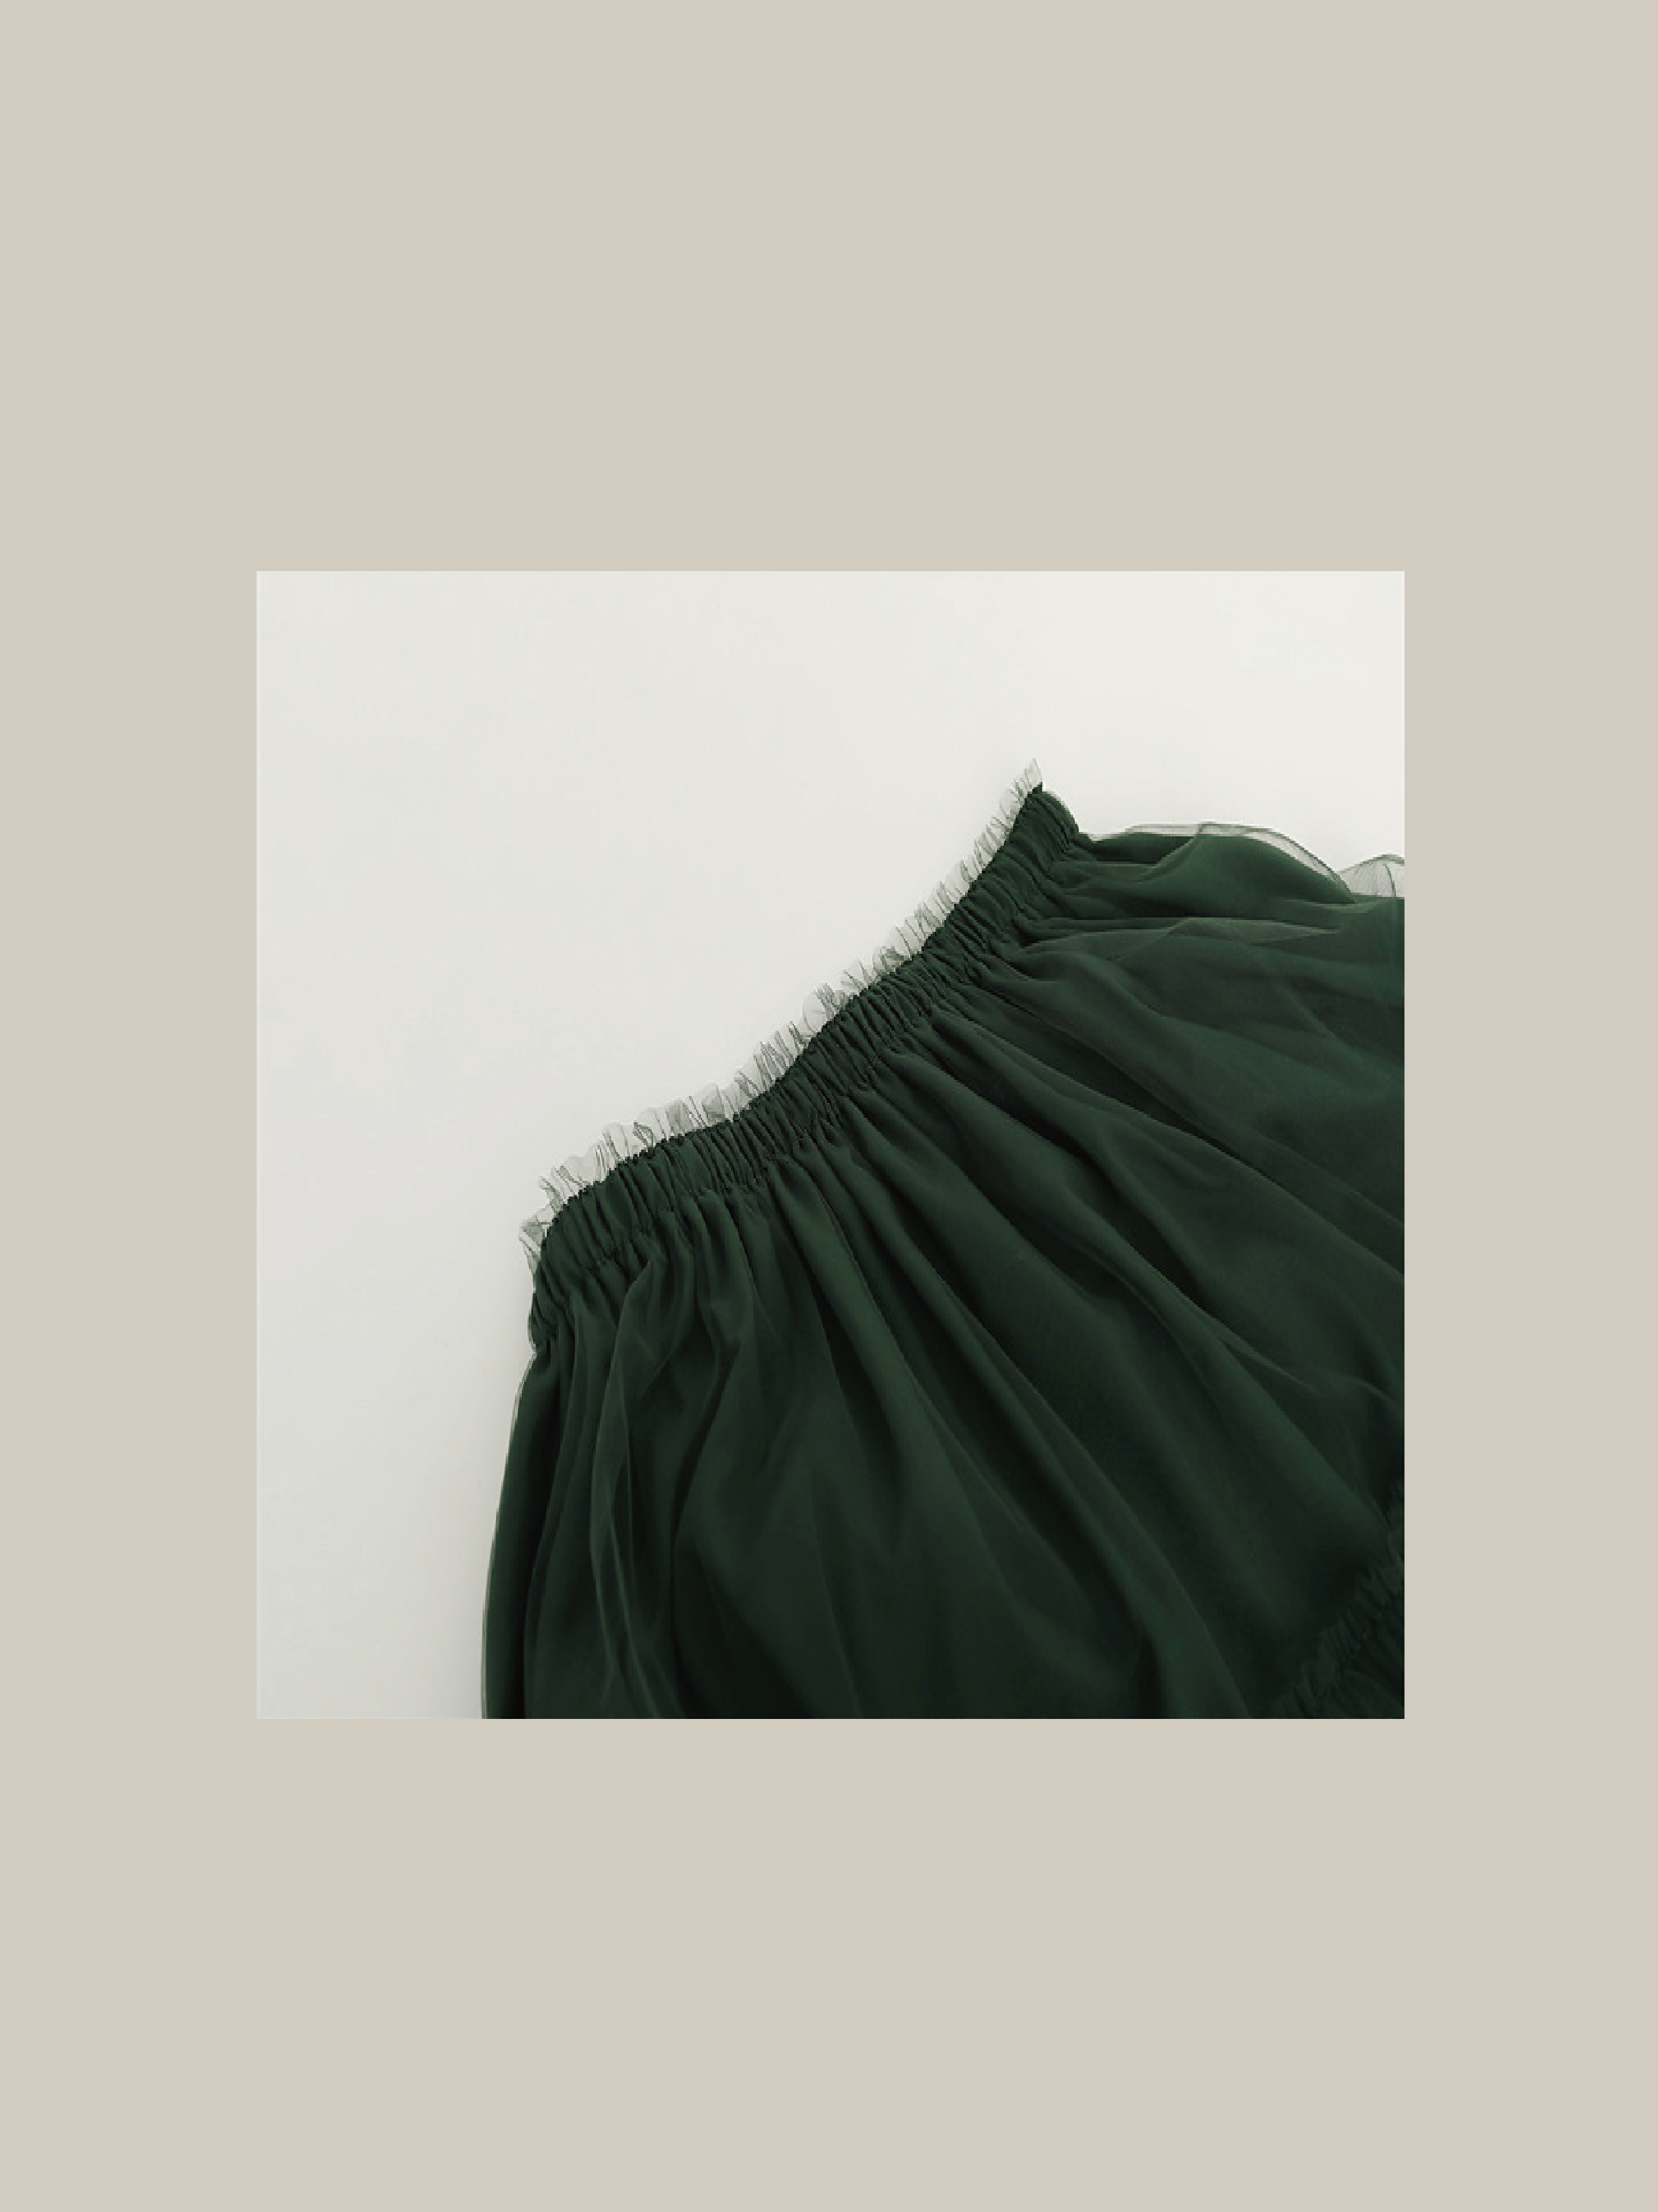 Viridian Green Mesh Skirt